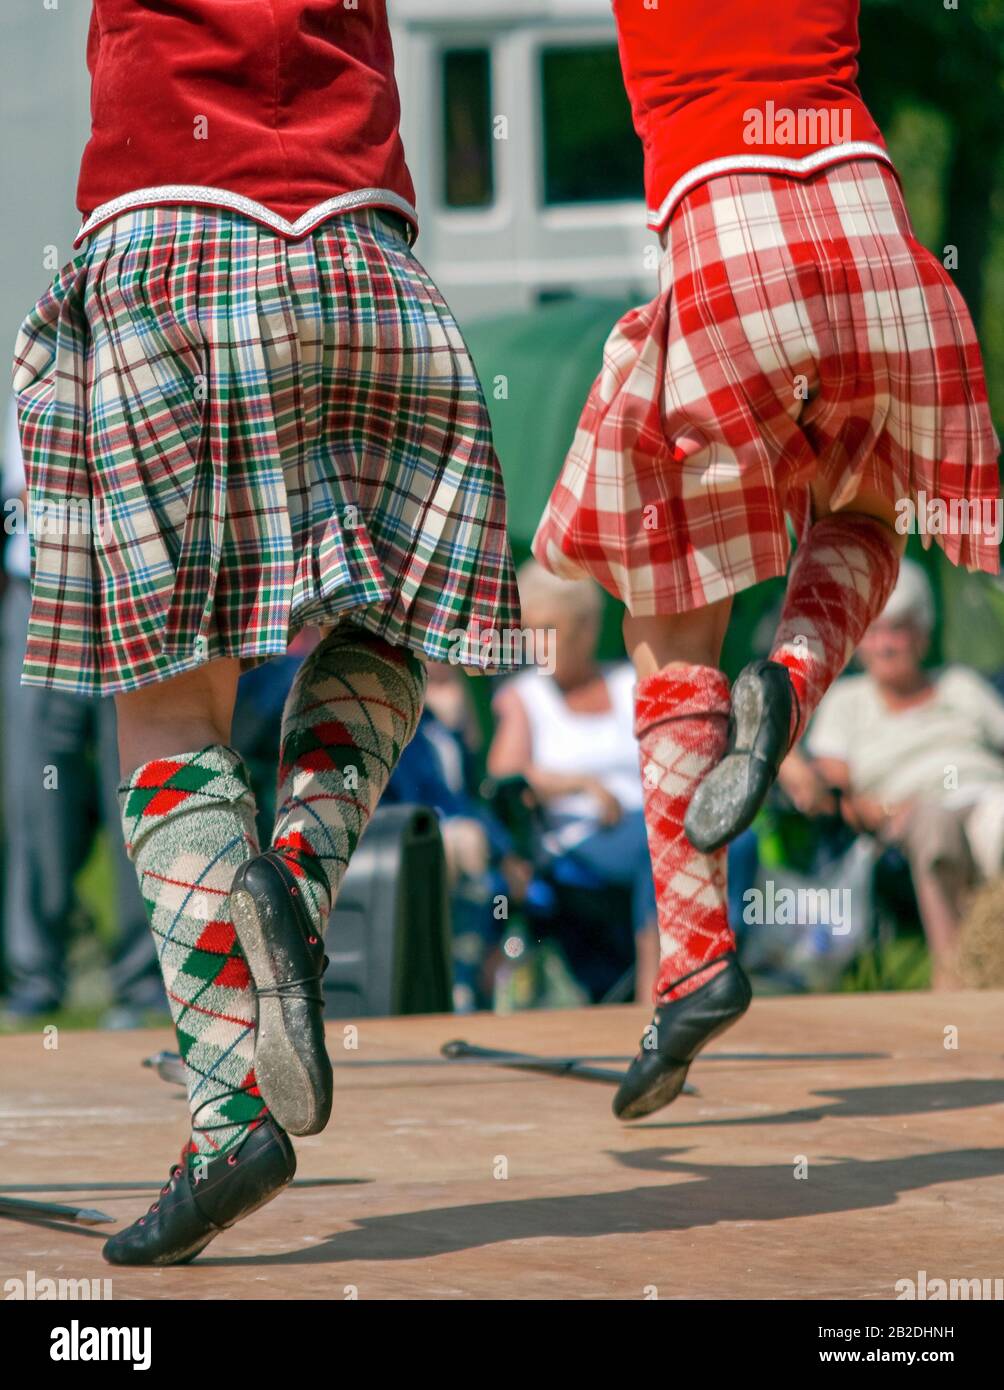 Joven bailarín escocés Highland realizando una danza de espada durante una competición en Colchester, Essex, Inglaterra. Foto de stock